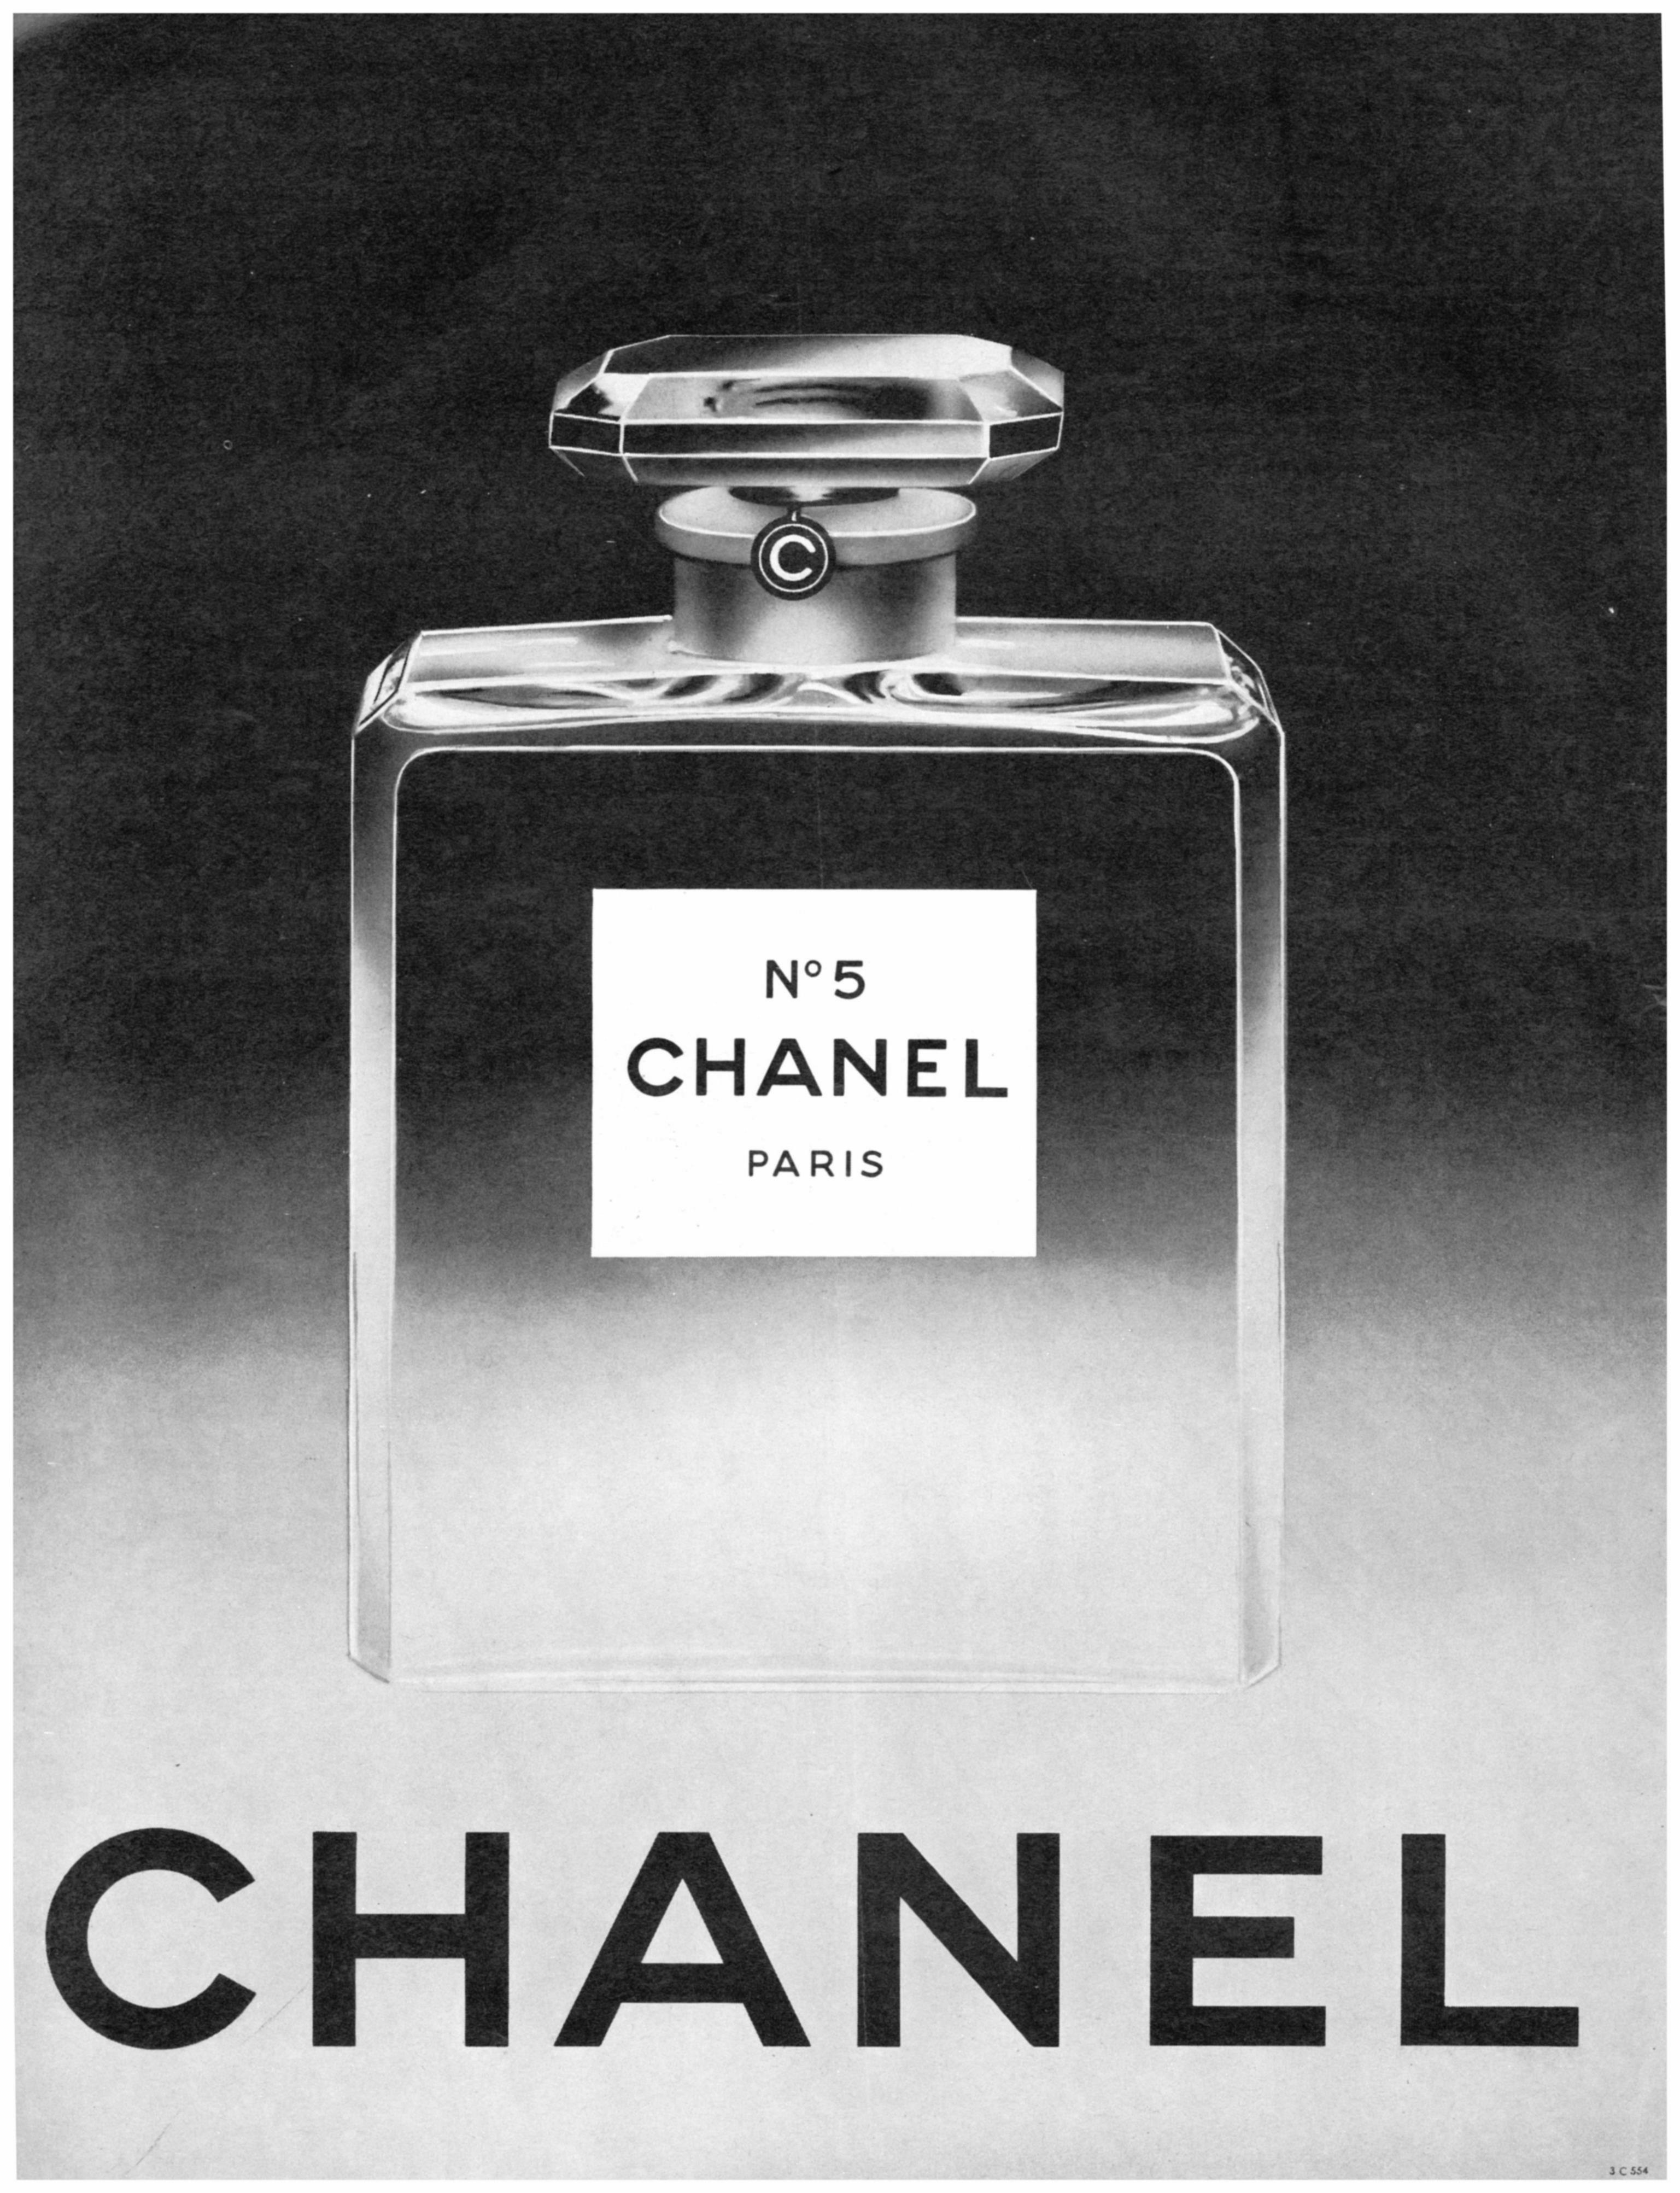 Chanel 1963 0.jpg